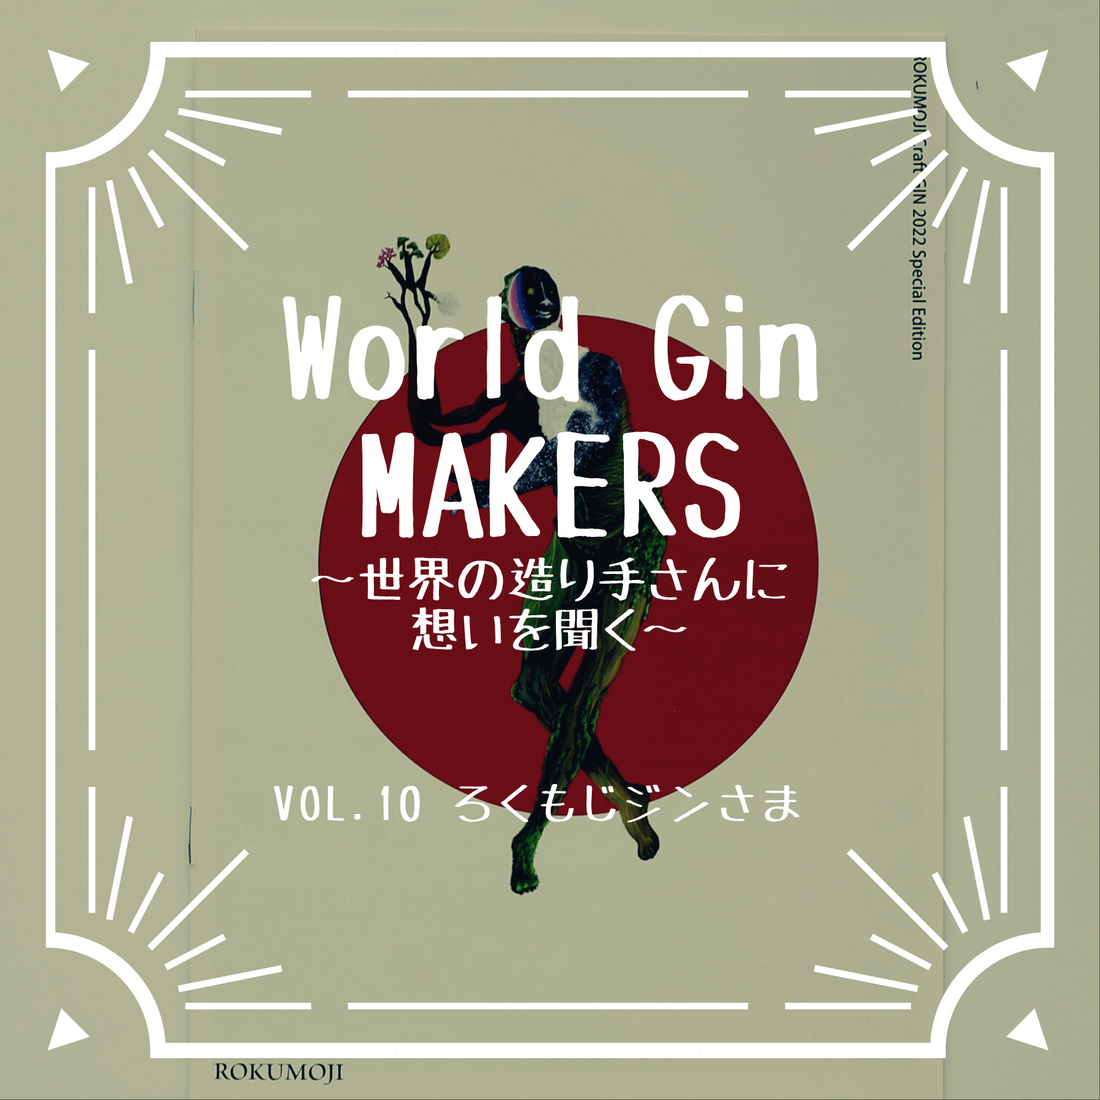 World Gin MAKERS〜世界の造り手さんに想いを聞く〜Vol.10 ろくもじジンさま